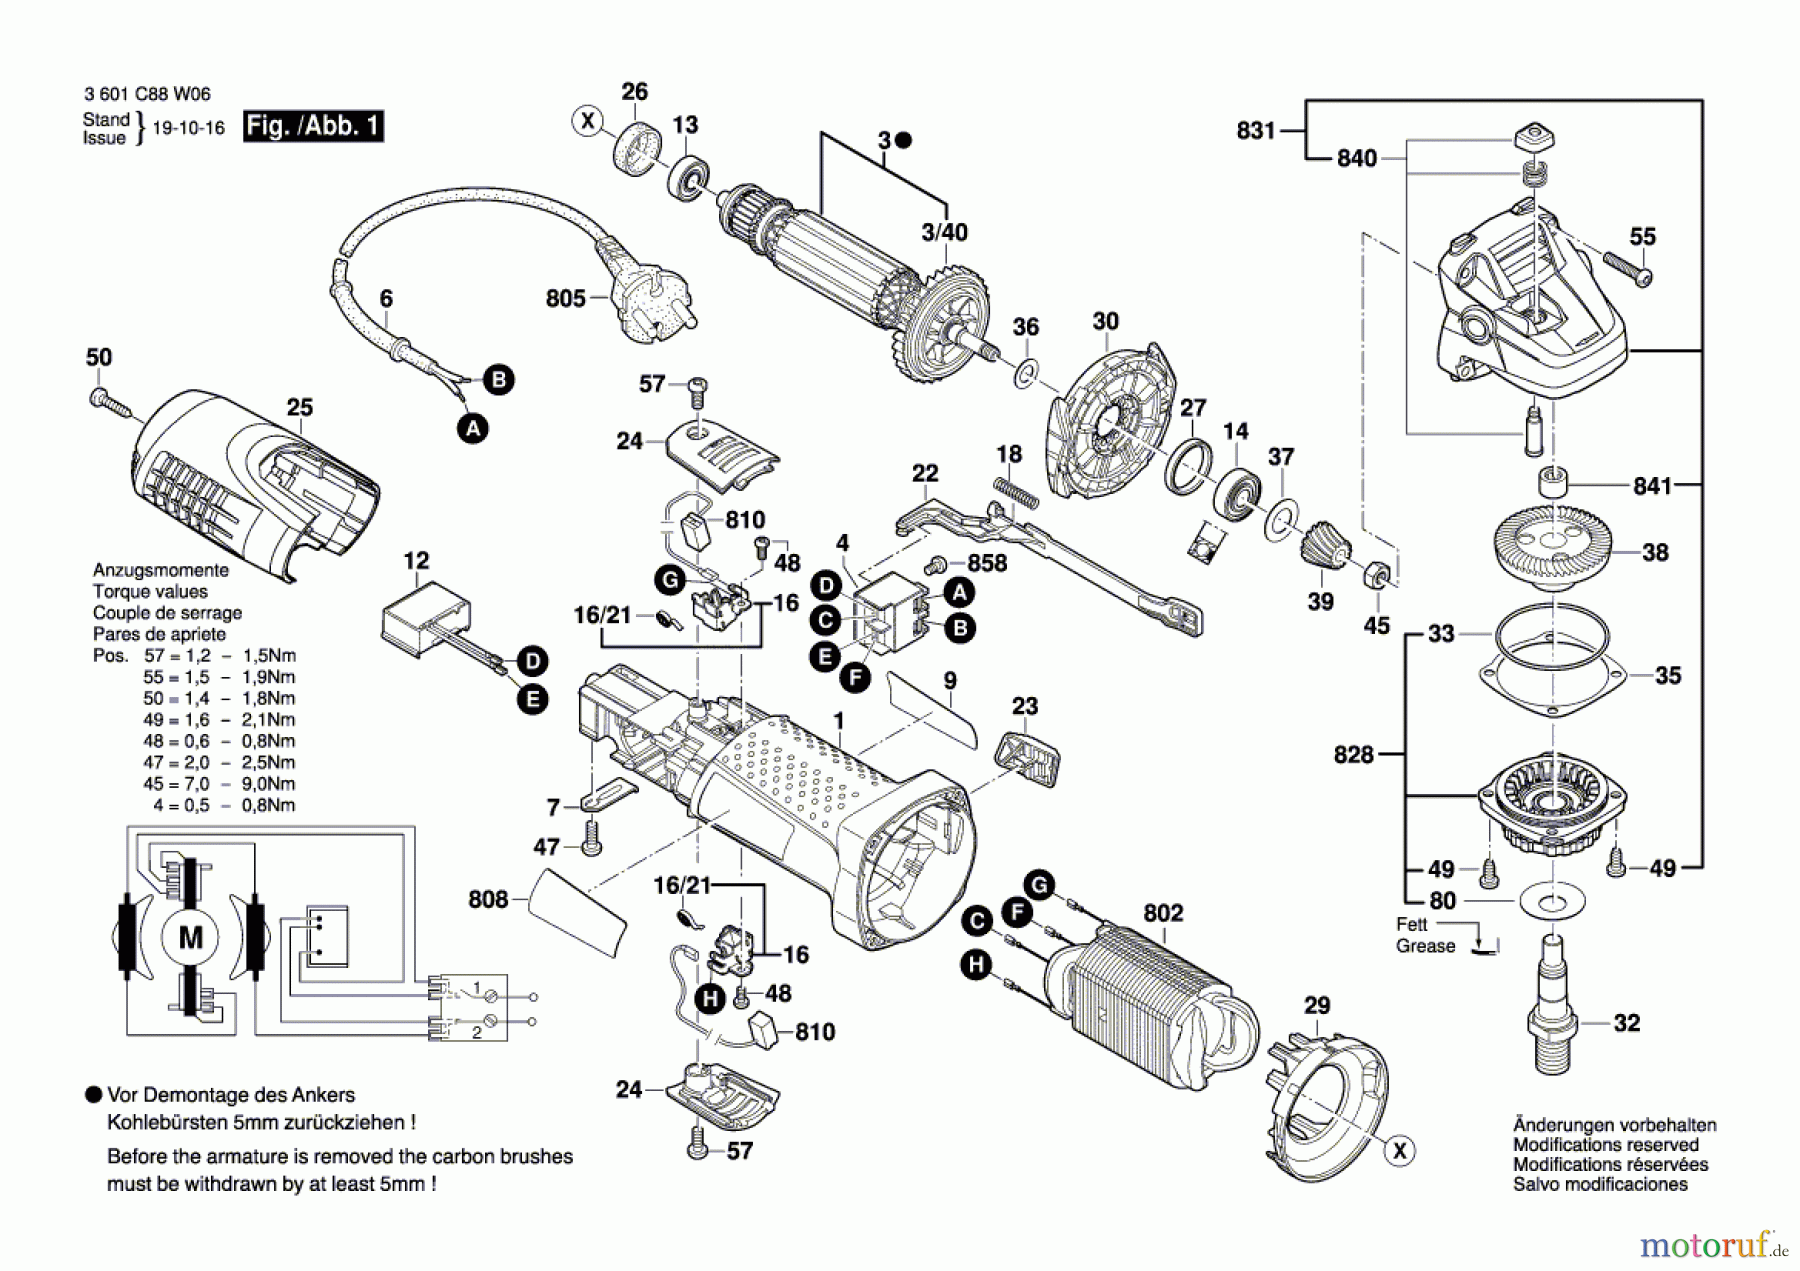  Bosch Werkzeug Winkelschleifer EWS 7-115 BASIC Seite 1